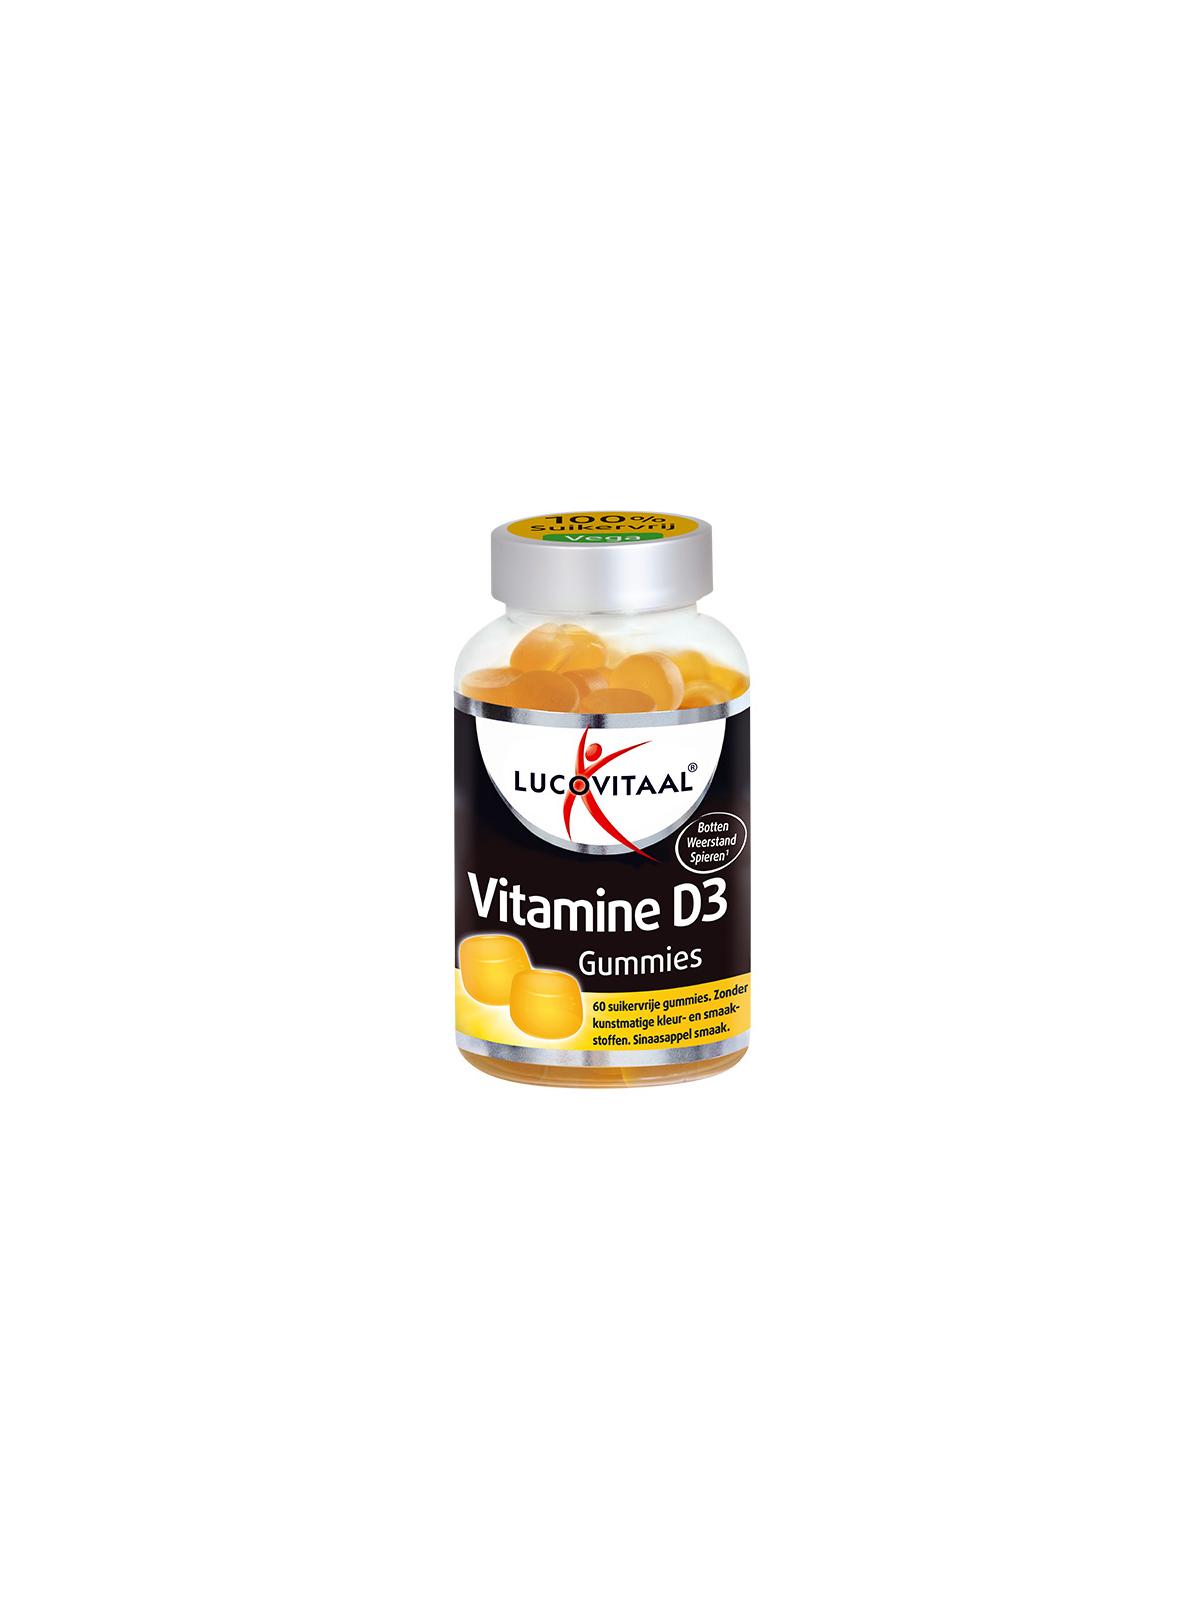 Vitamine D3 gummies